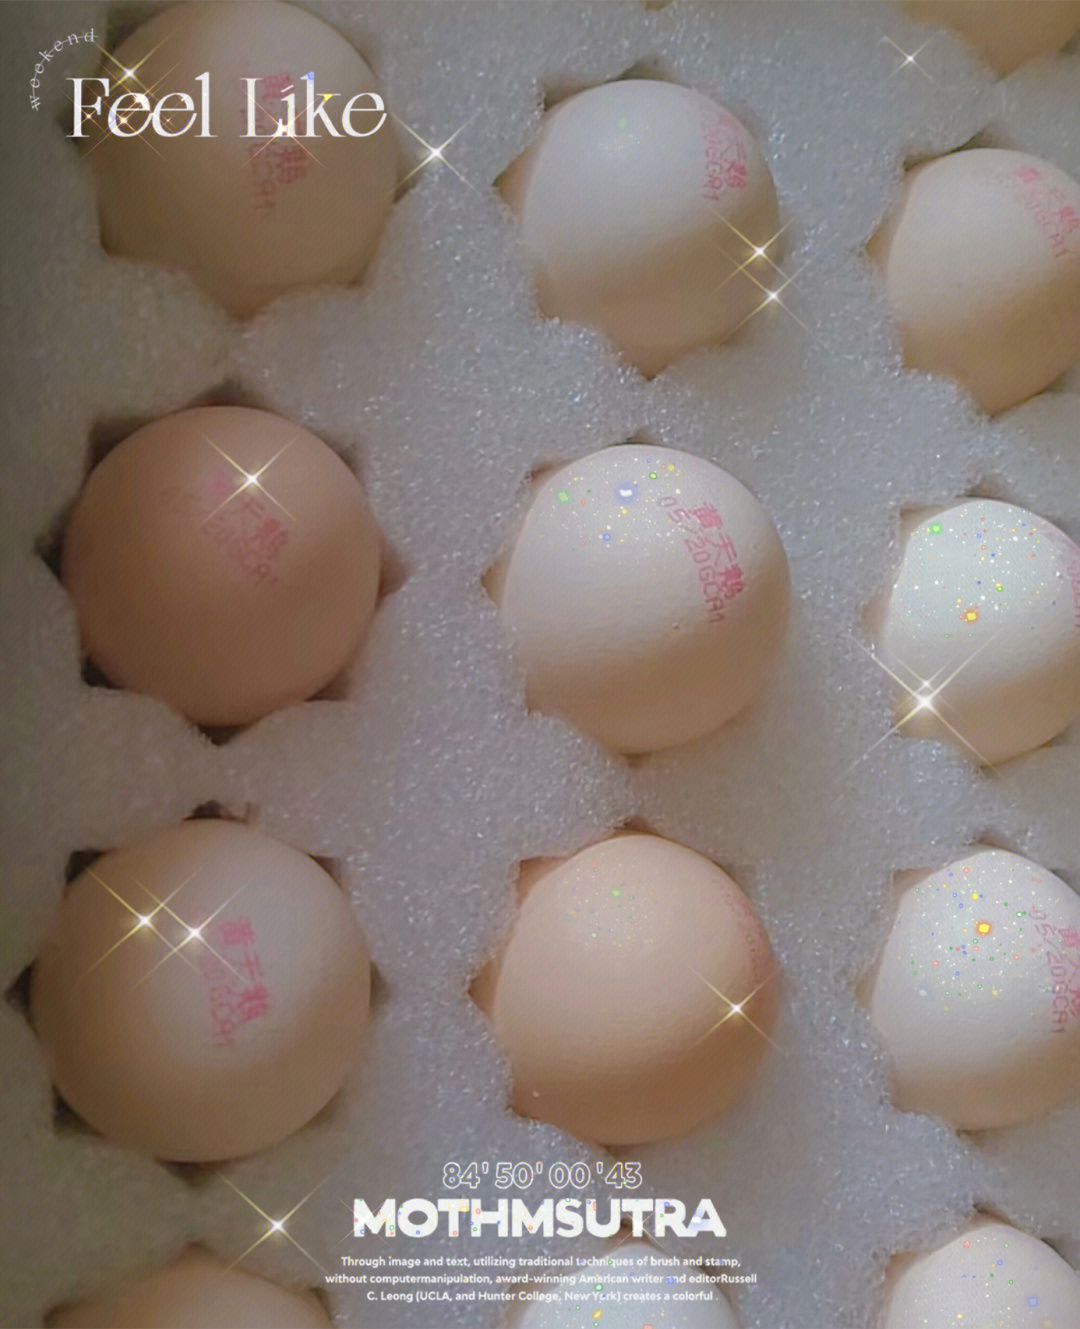 黄天鹅鸡蛋 抗生素图片